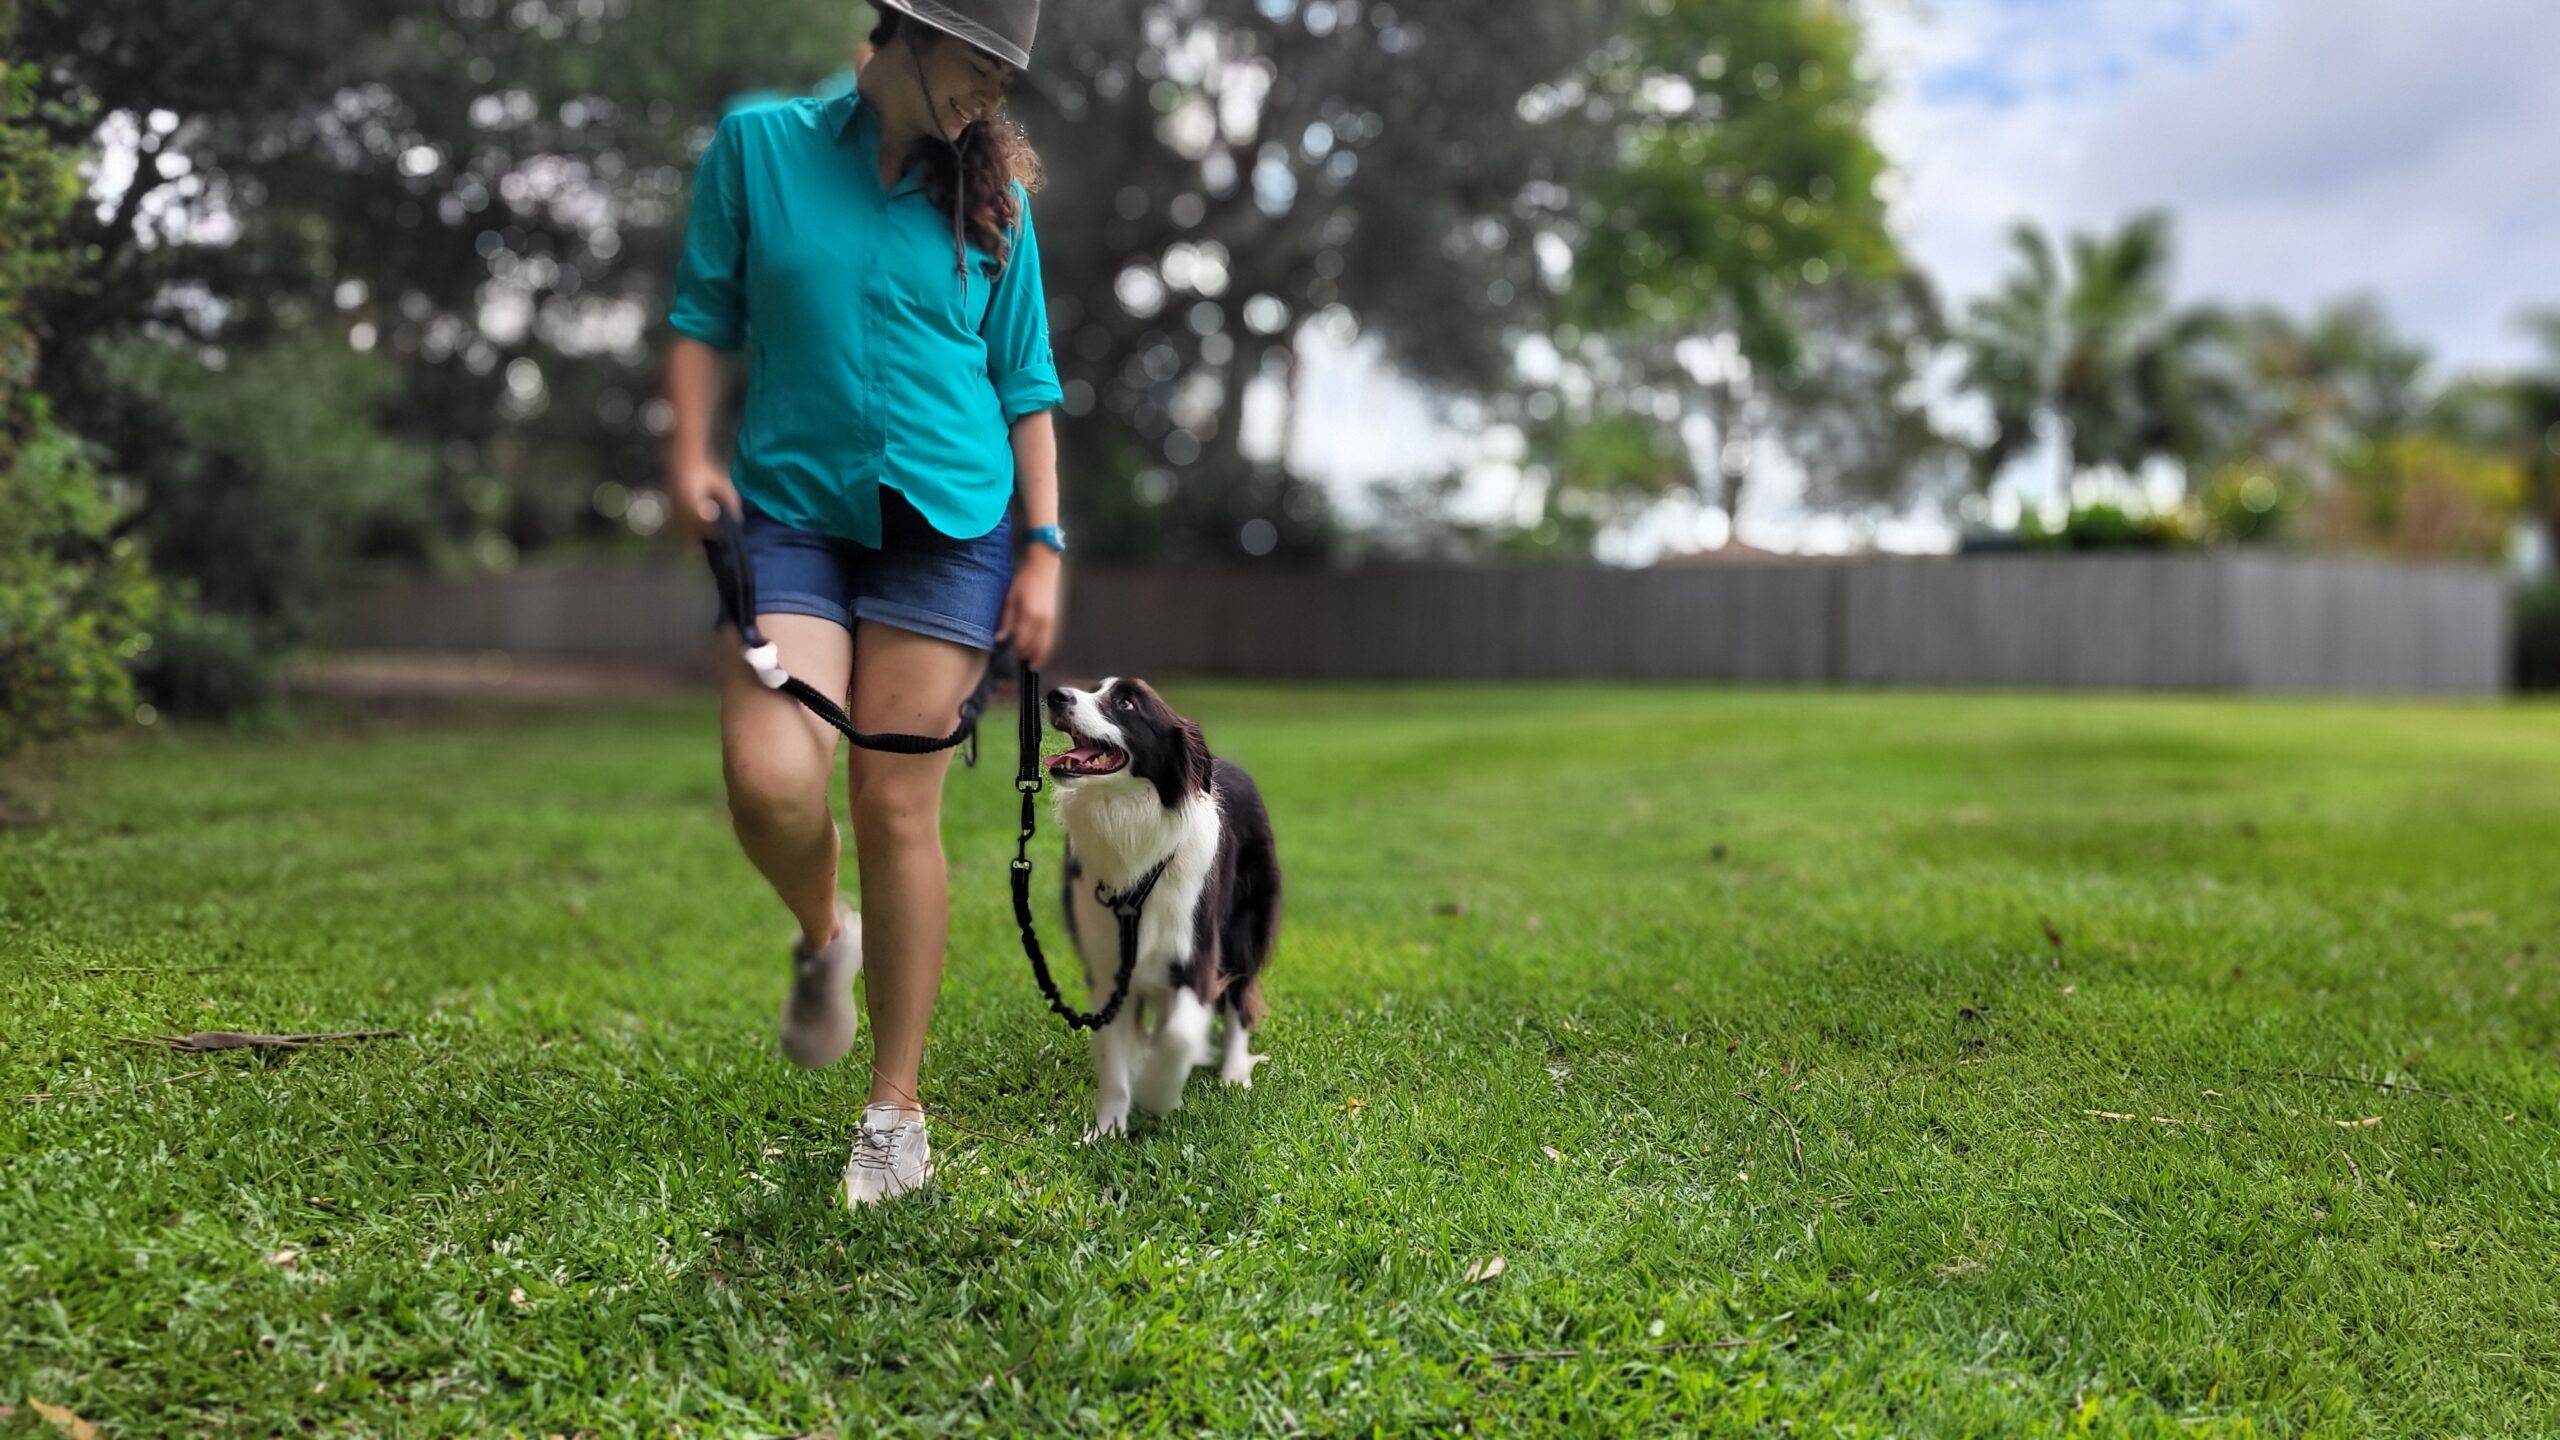 OneTigris Reflective Dog Leash Coupler Adjustable Double Leash for One/Two Dog Training Walking Hiking